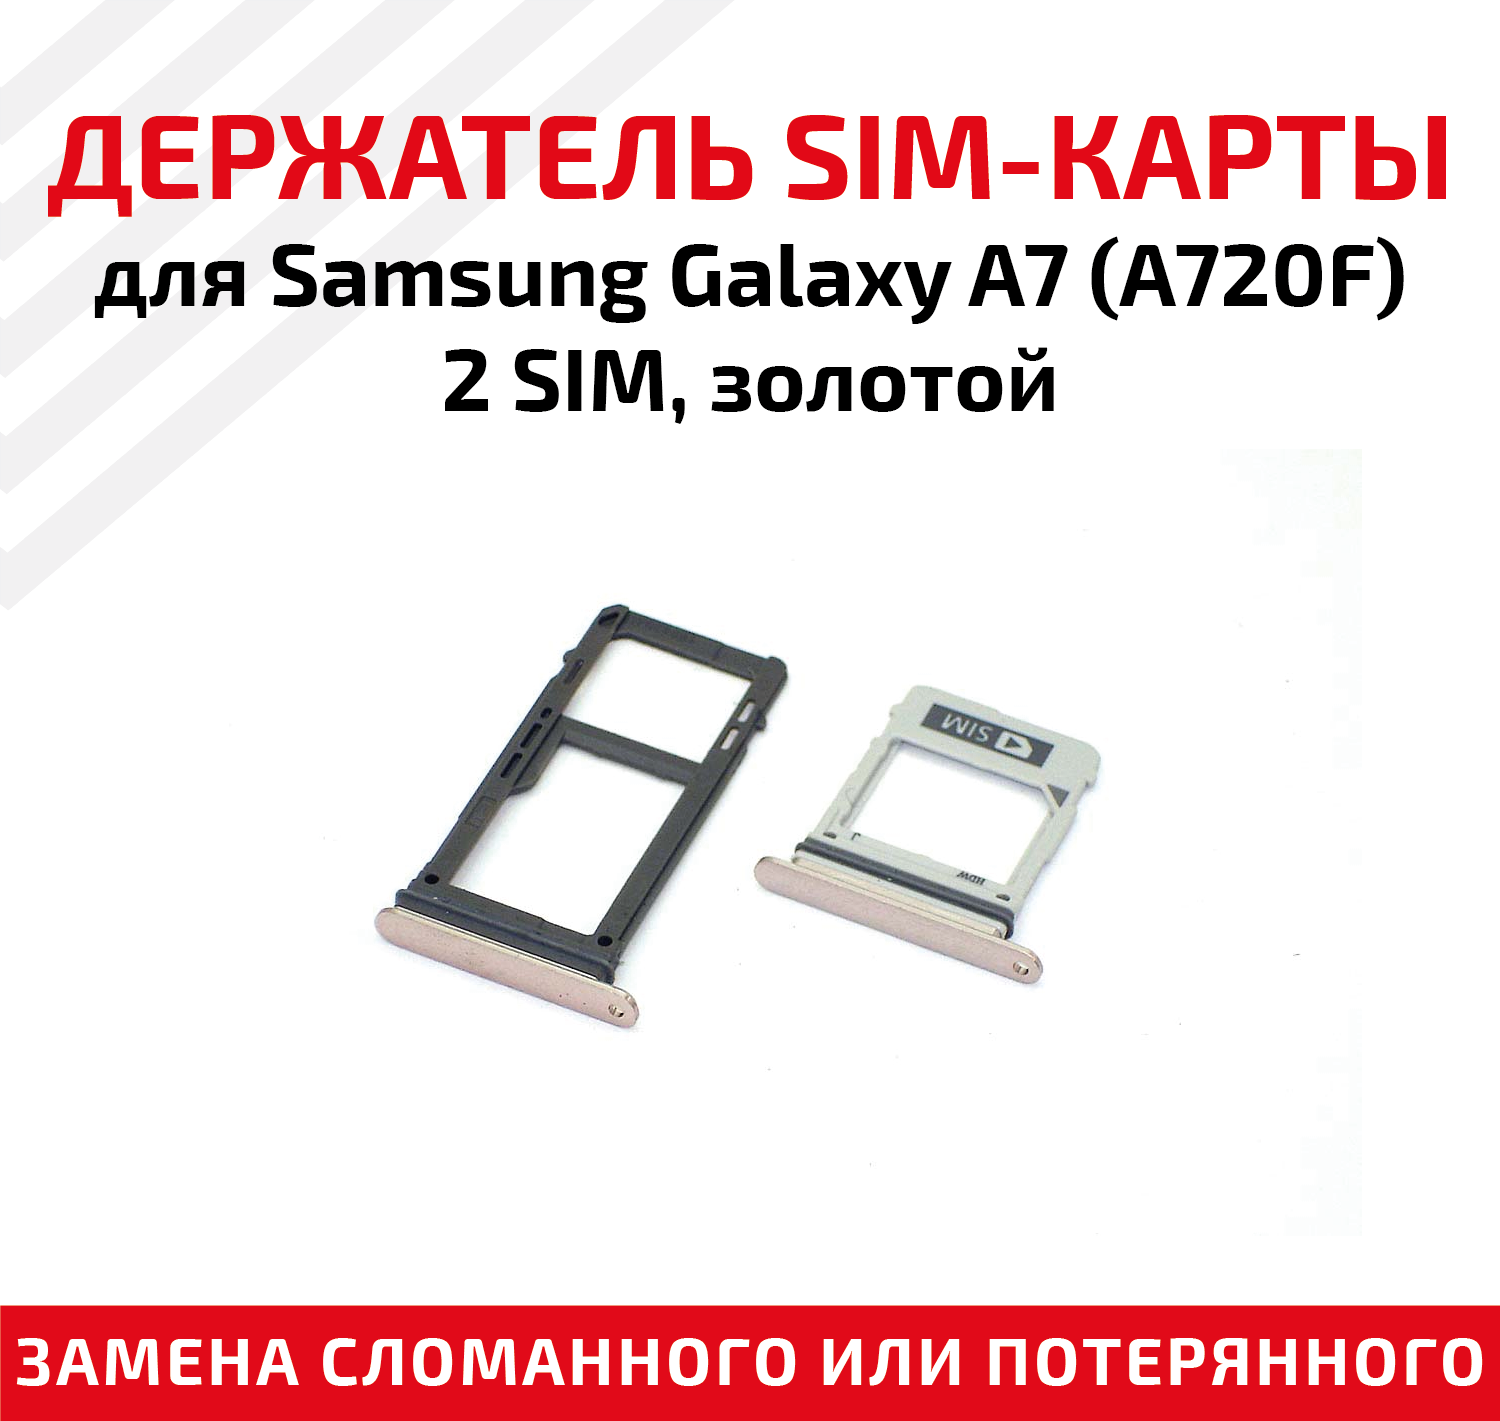 Лоток (держатель контейнер слот) SIM-карты для мобильного телефона (смартфона) Samsung Galaxy A7 (A720F) - 2 SIM золотой